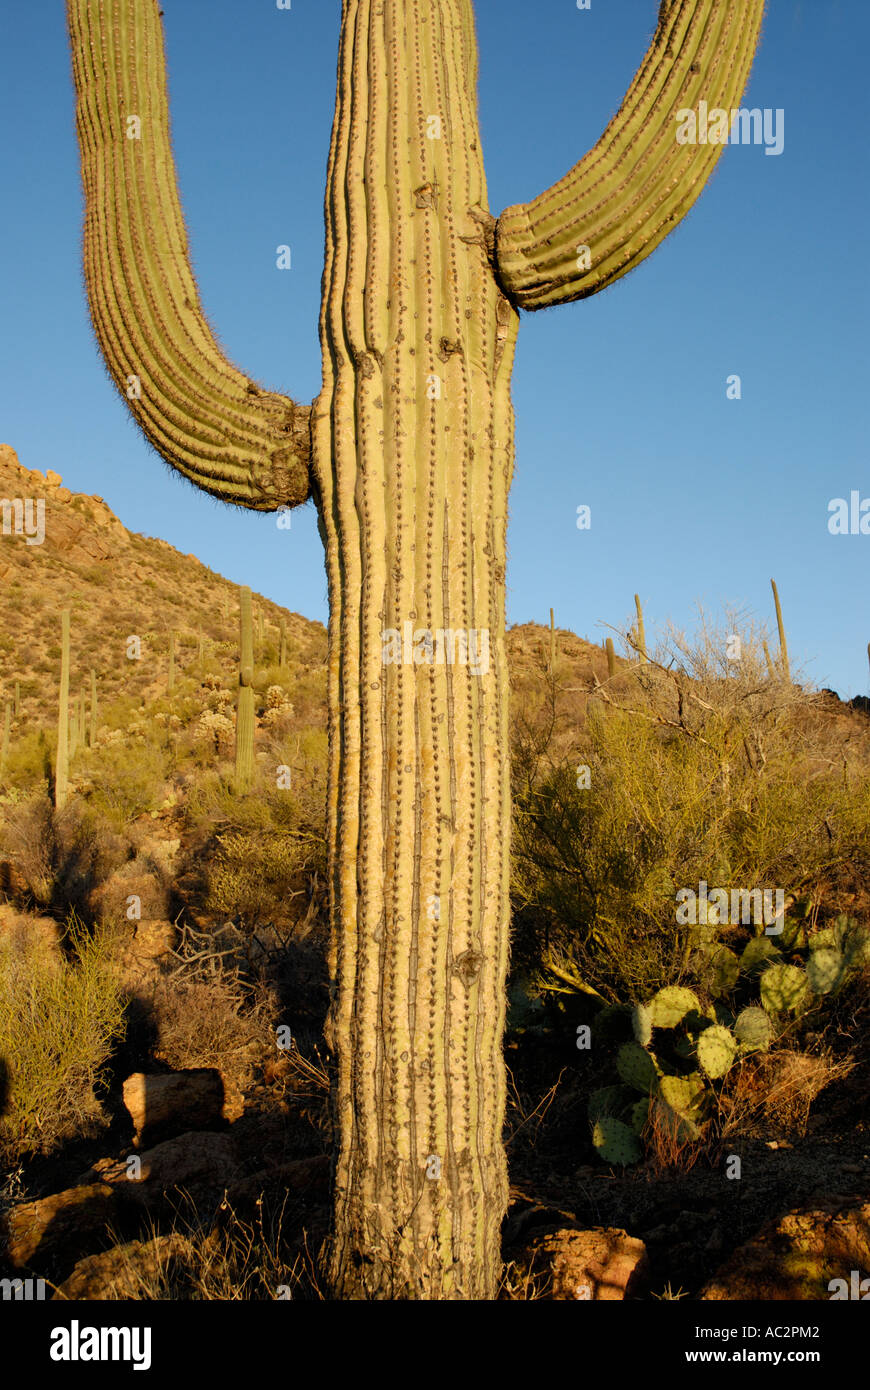 Saguaro Kaktus Carnegiea Gigantea, mit zwei Armen, bergige Wüste Hintergrund, Sonora-Wüste, Südwesten der USA Stockfoto